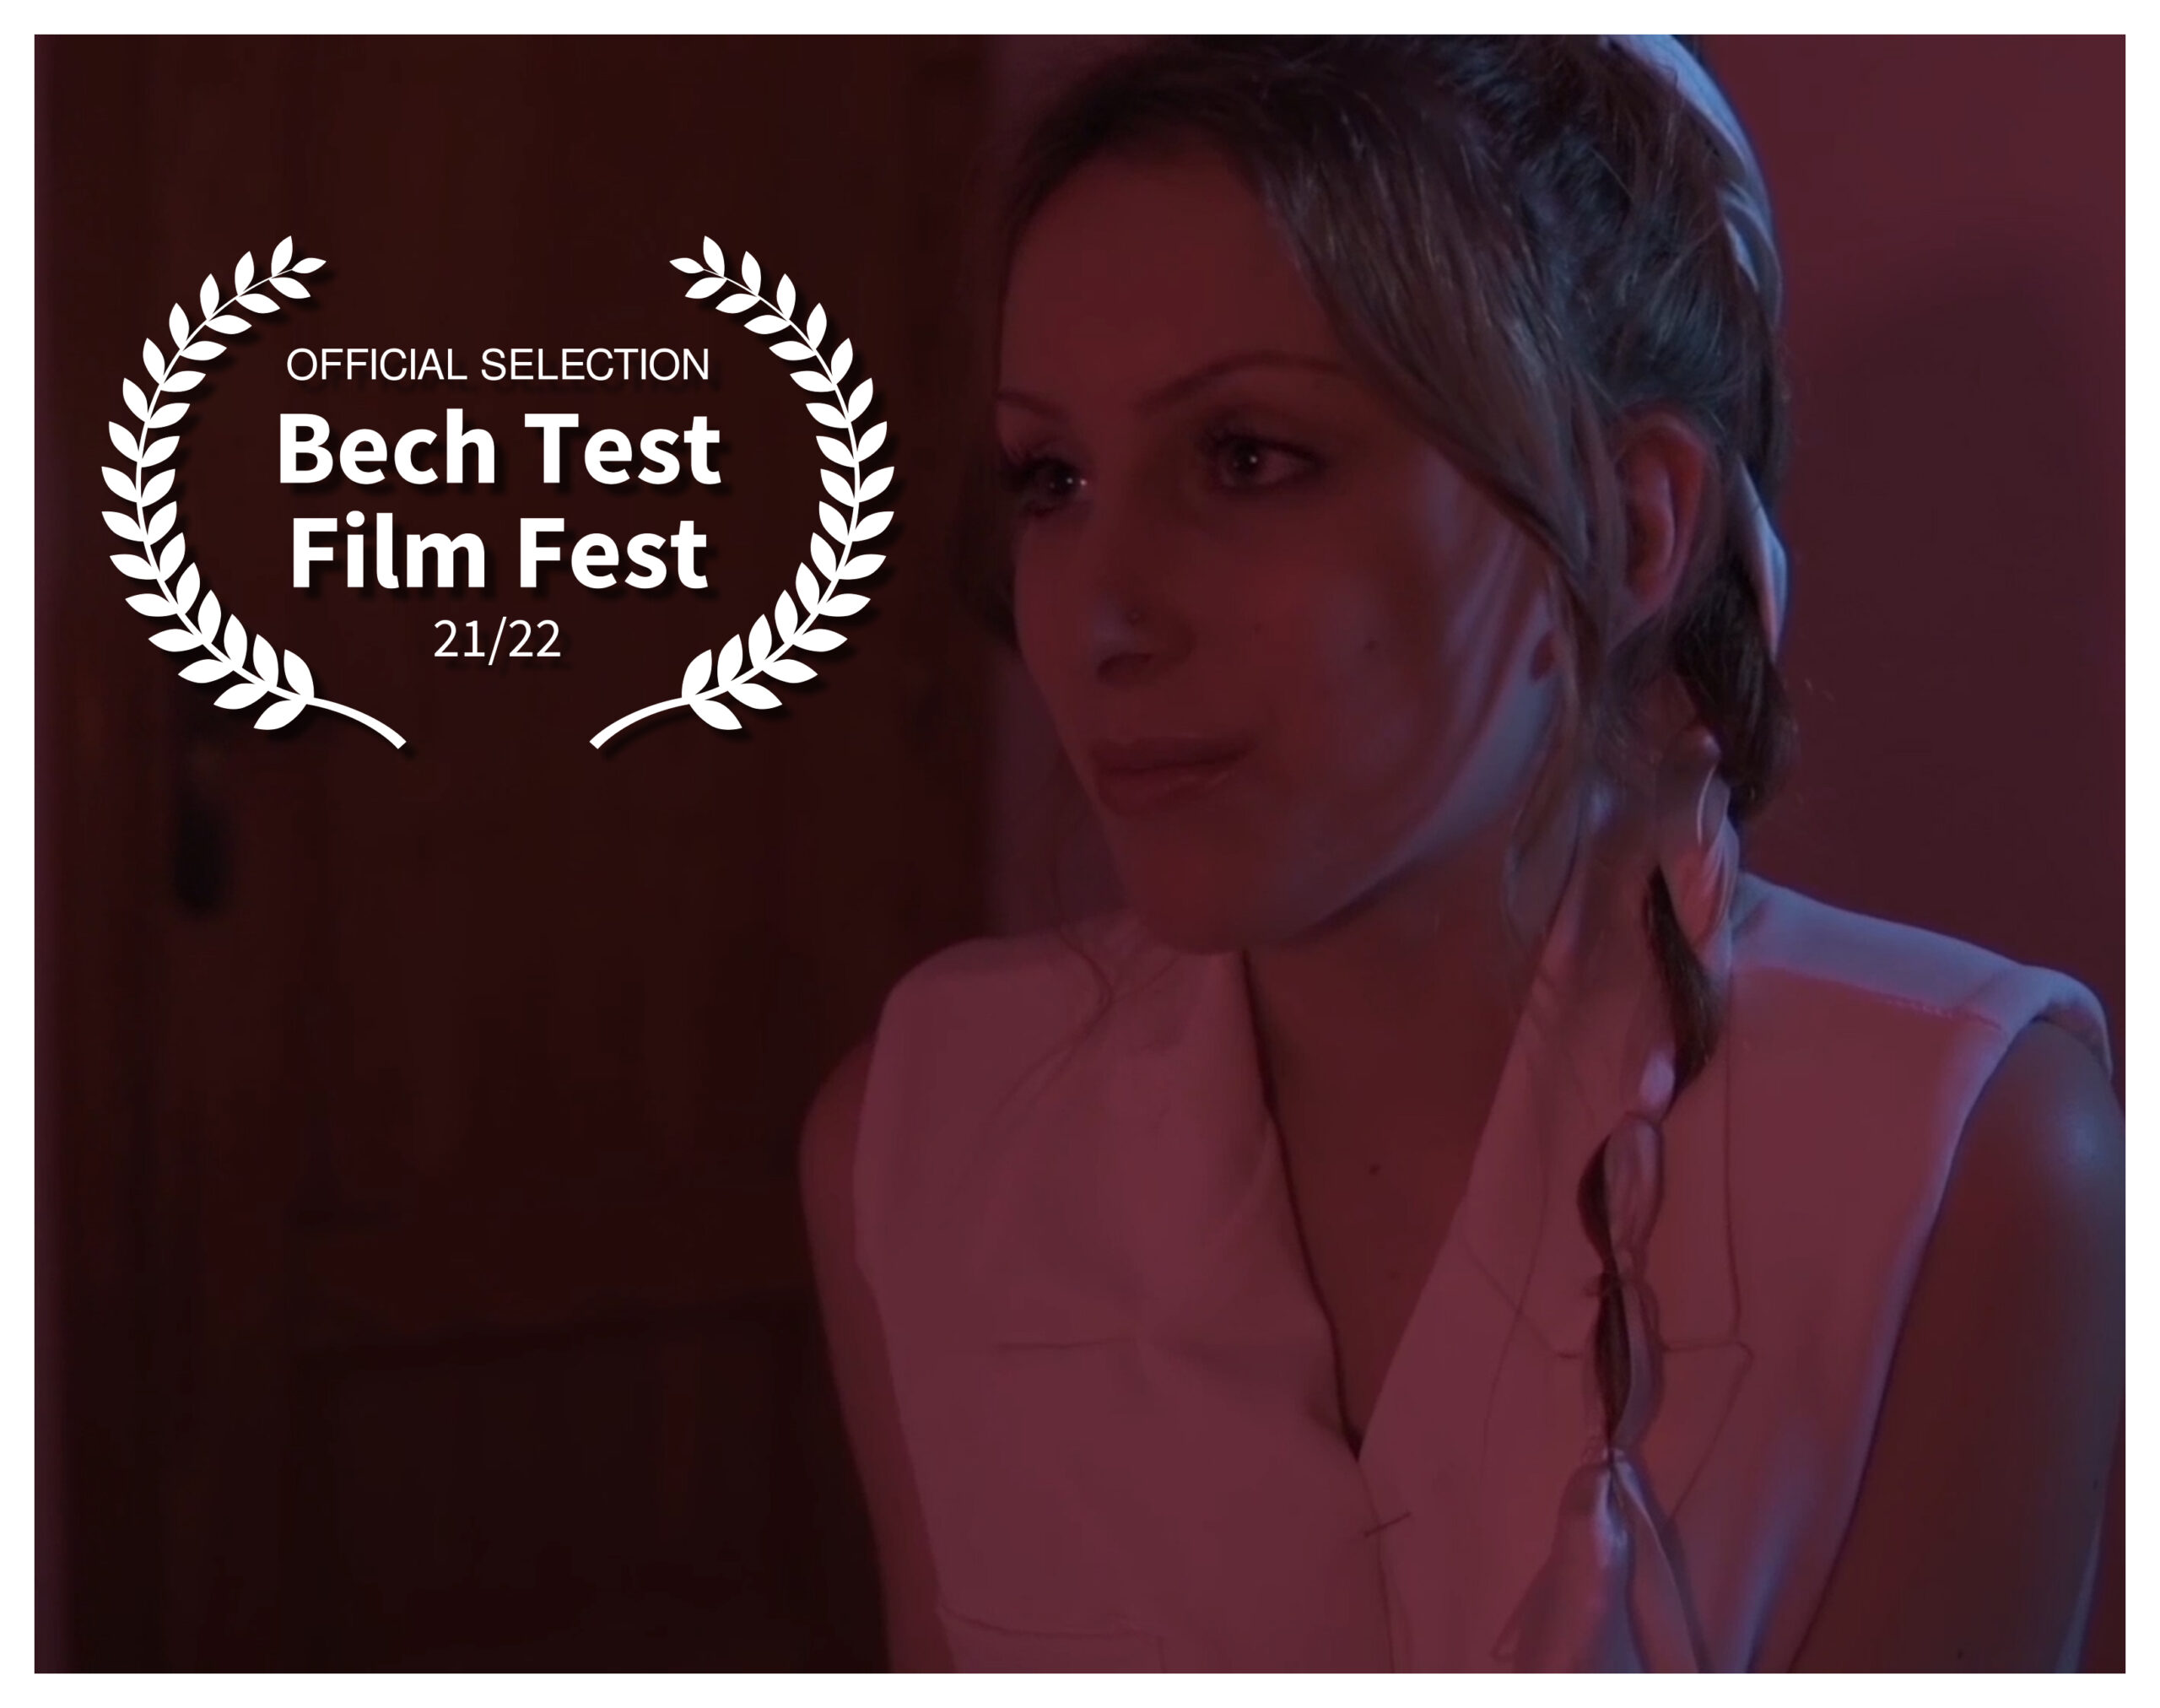 Bech Test Film Fest